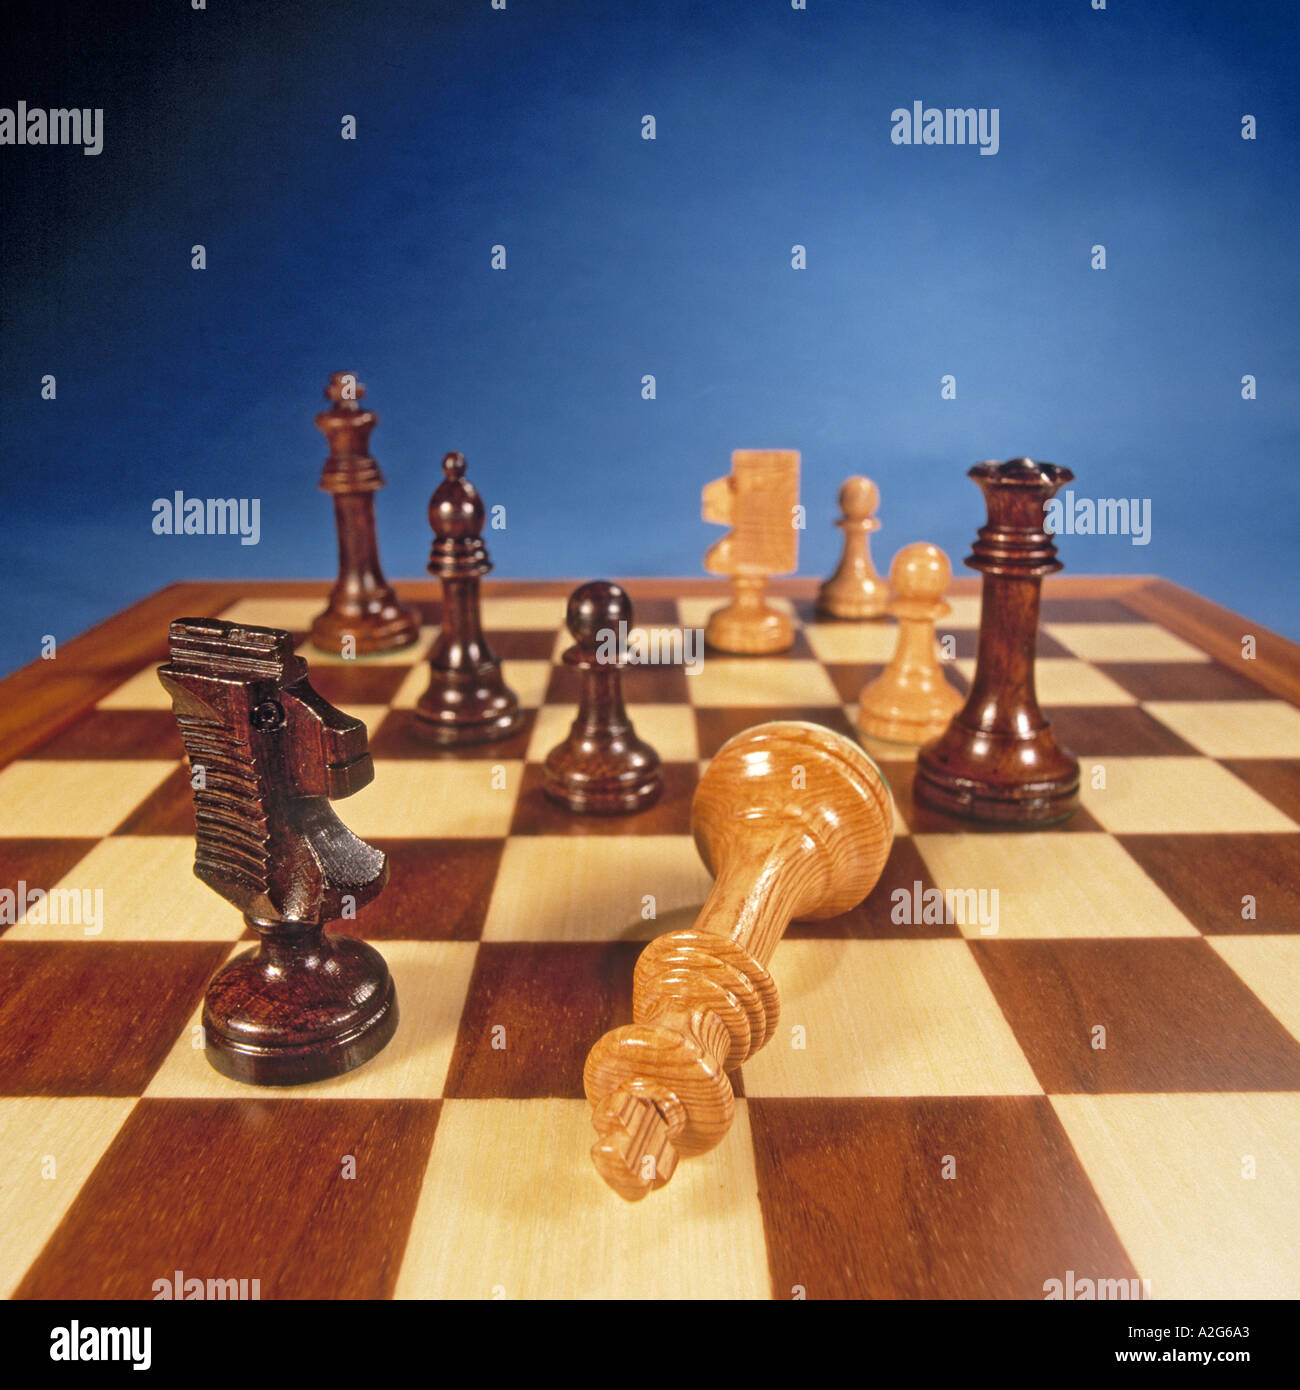 Schach Spiel Schachmatt Check mate Stockfotografie - Alamy